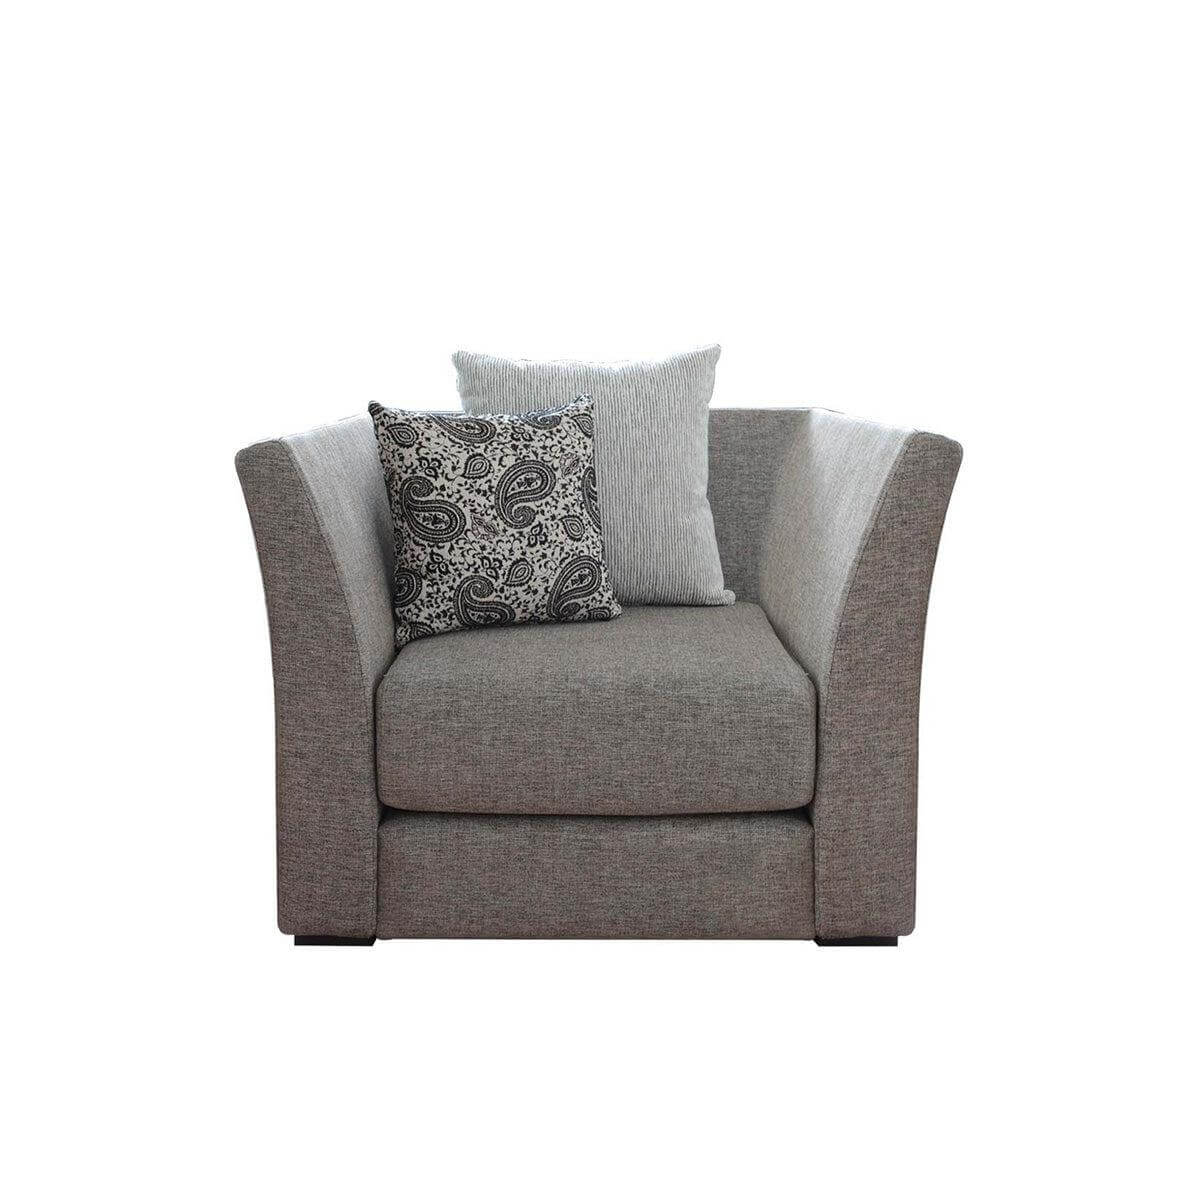 nara 1 seat elegant and simple sofa